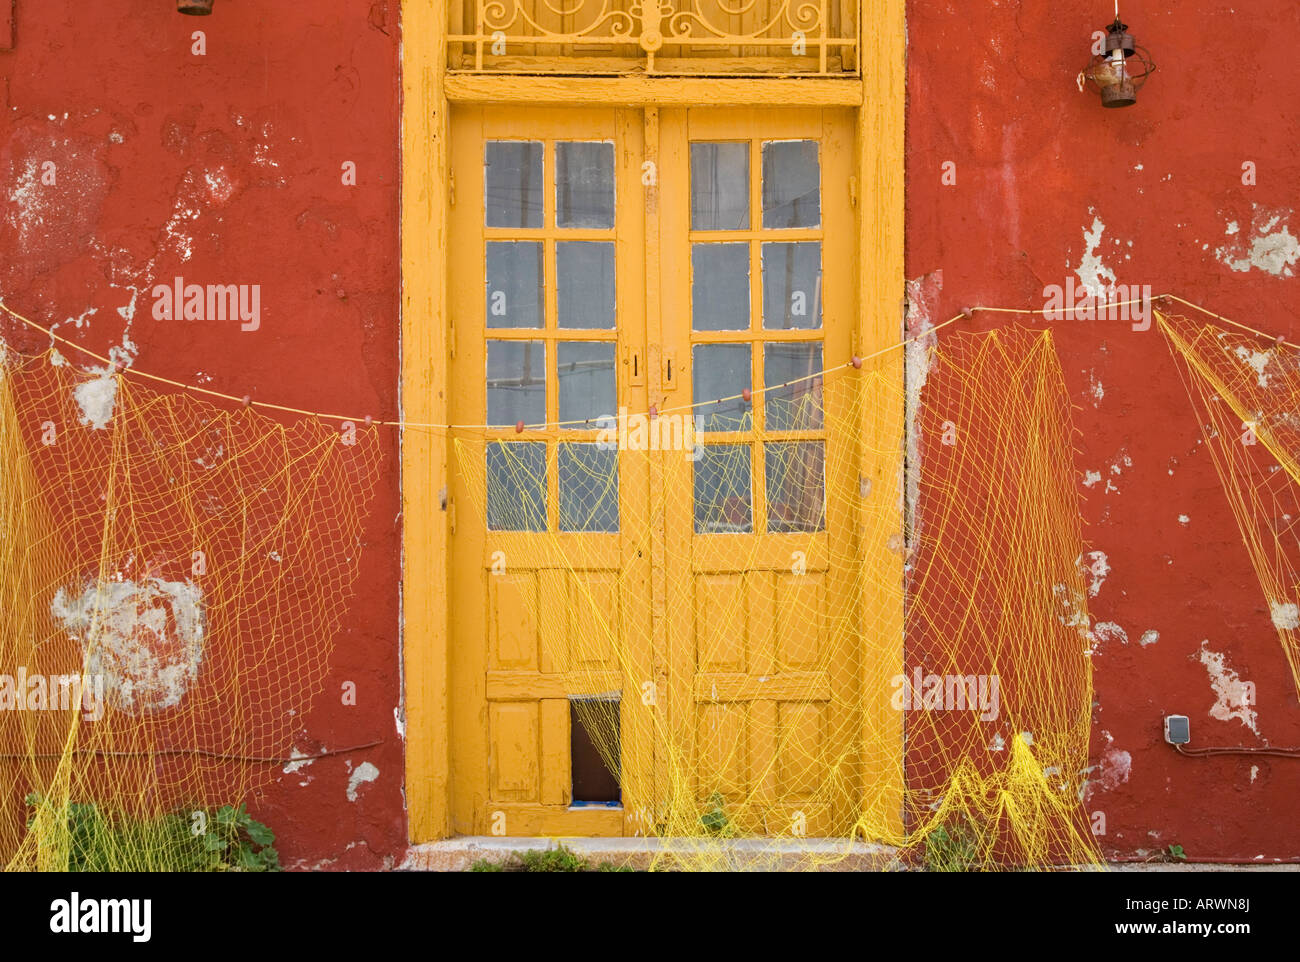 Vecchio edificio con pannelli di vetro giallo porta di legno fornisce il contesto ideale per appendere il giallo delle reti da pesca ad asciugare, Kamini, Hydra Island, Grecia Foto Stock